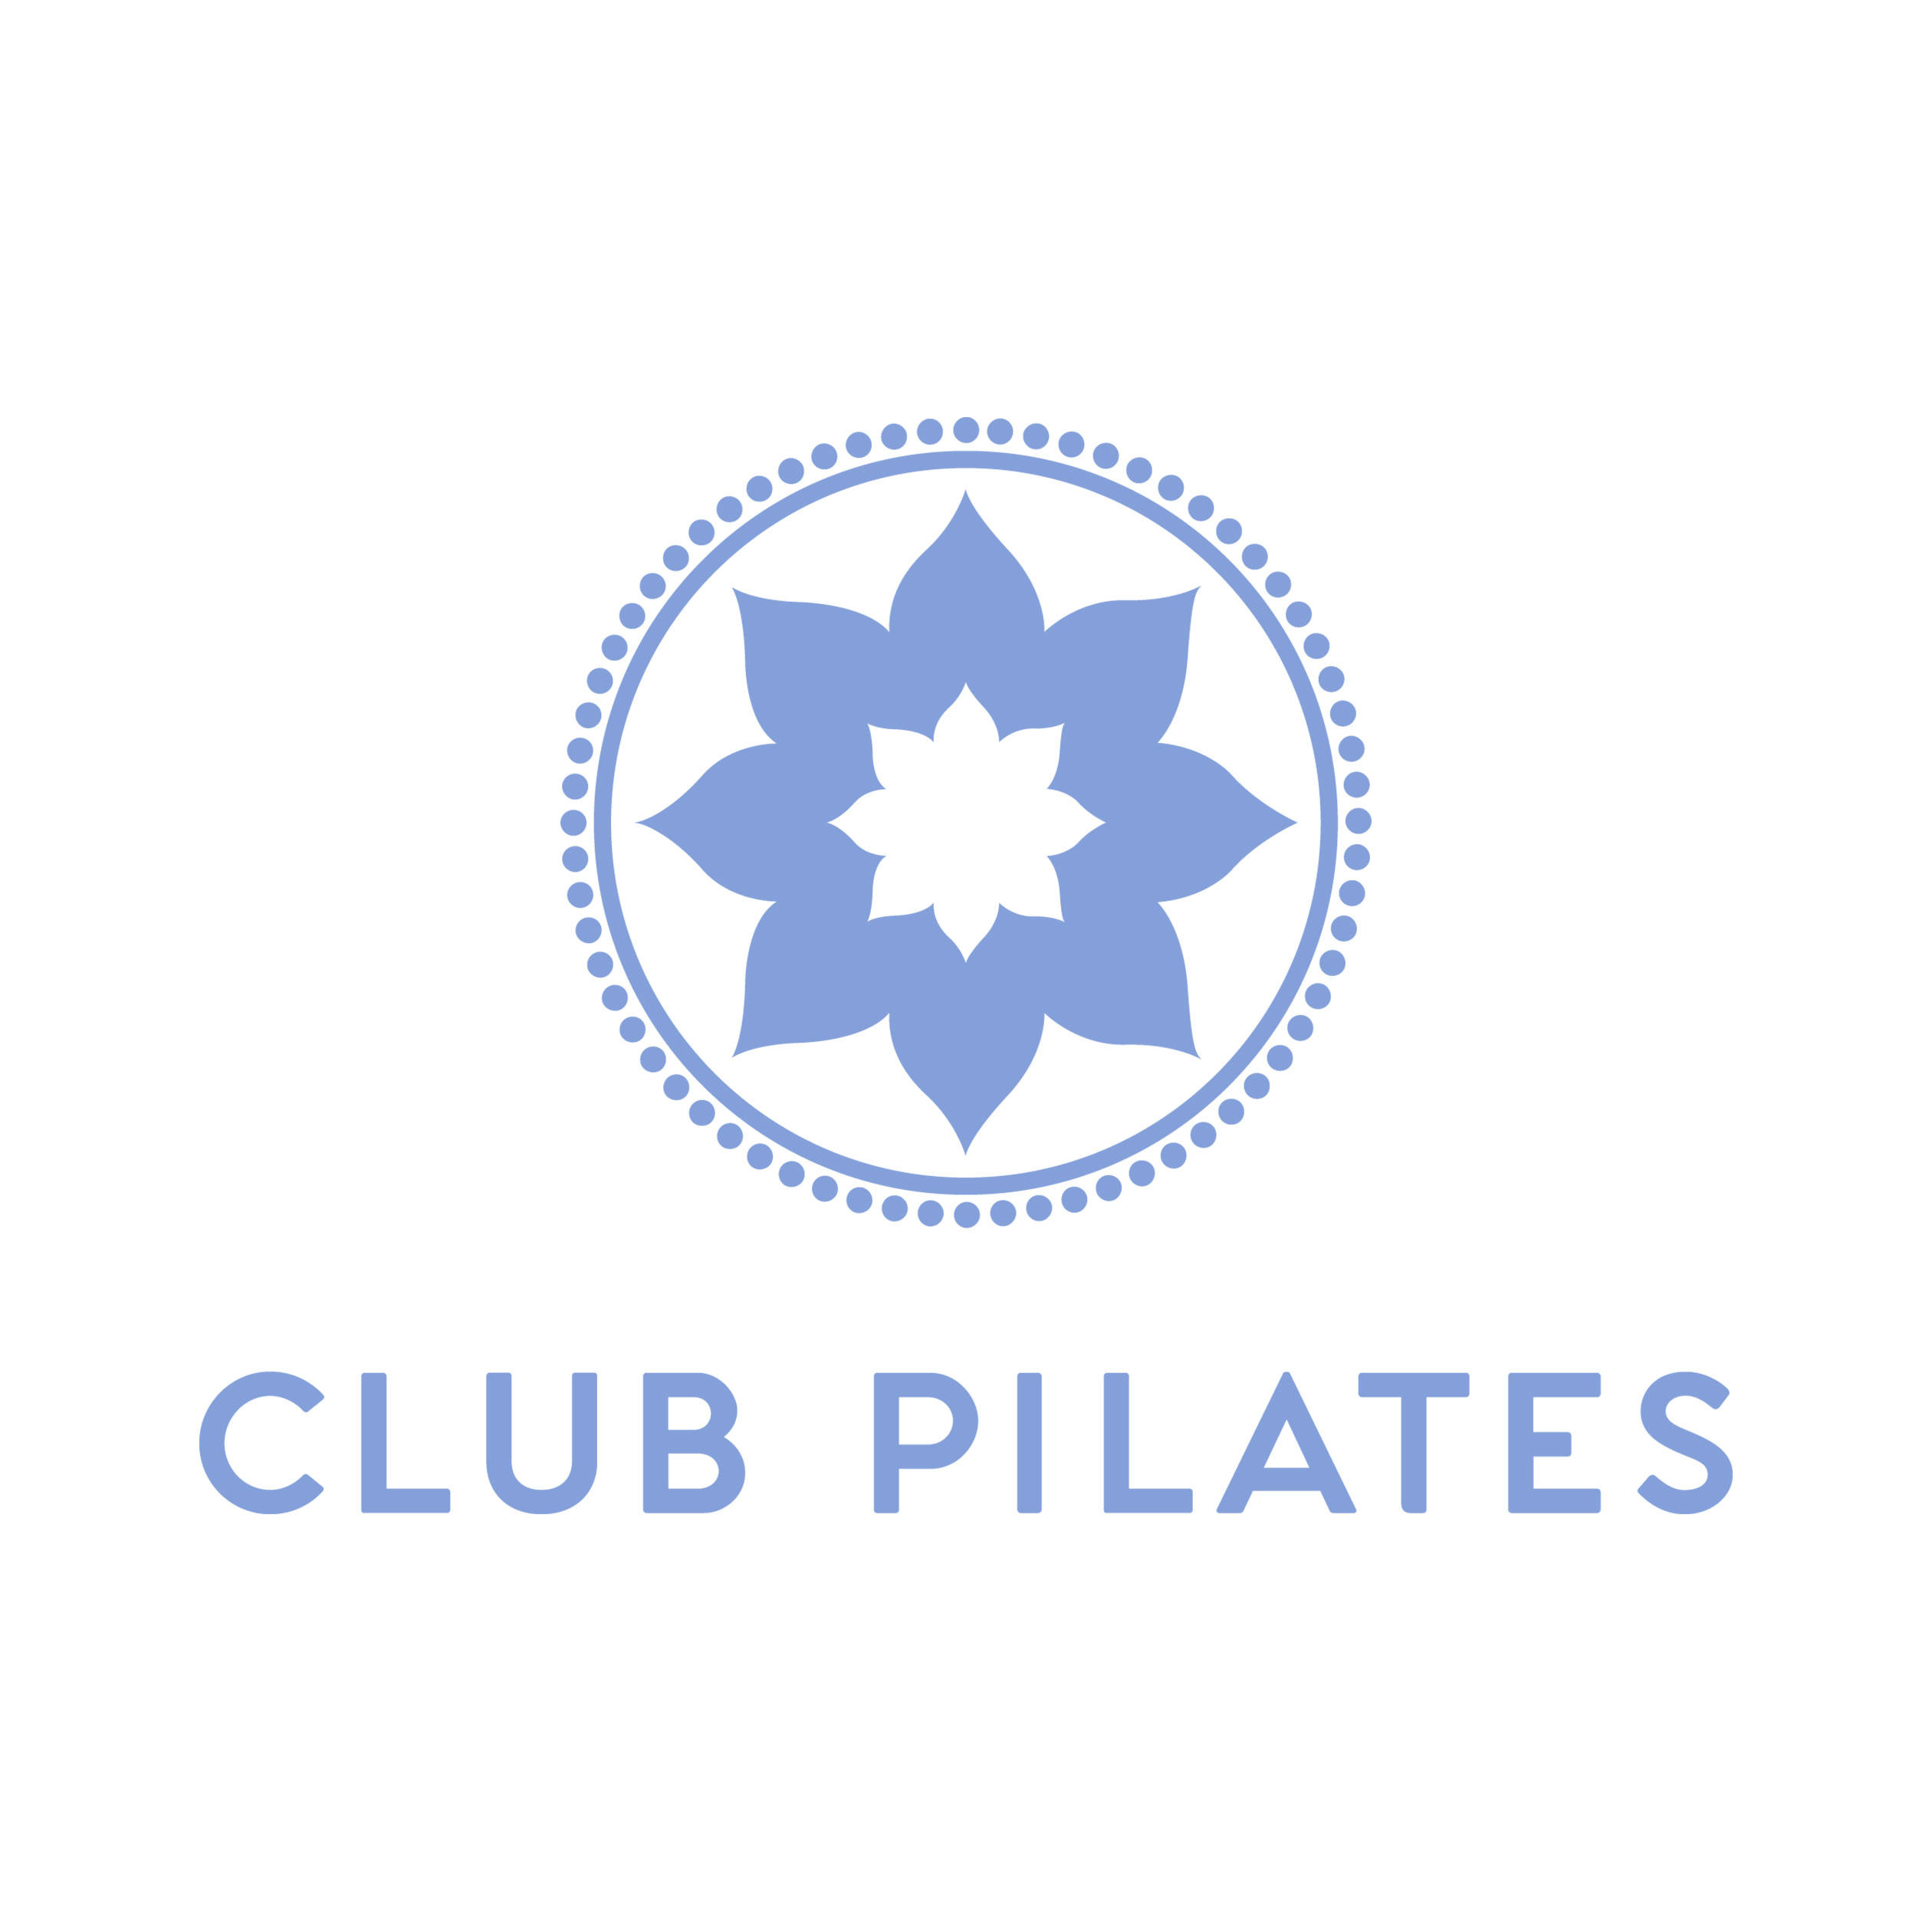 Club Pilates - Chicago, IL 60654 - (312)906-7178 | ShowMeLocal.com